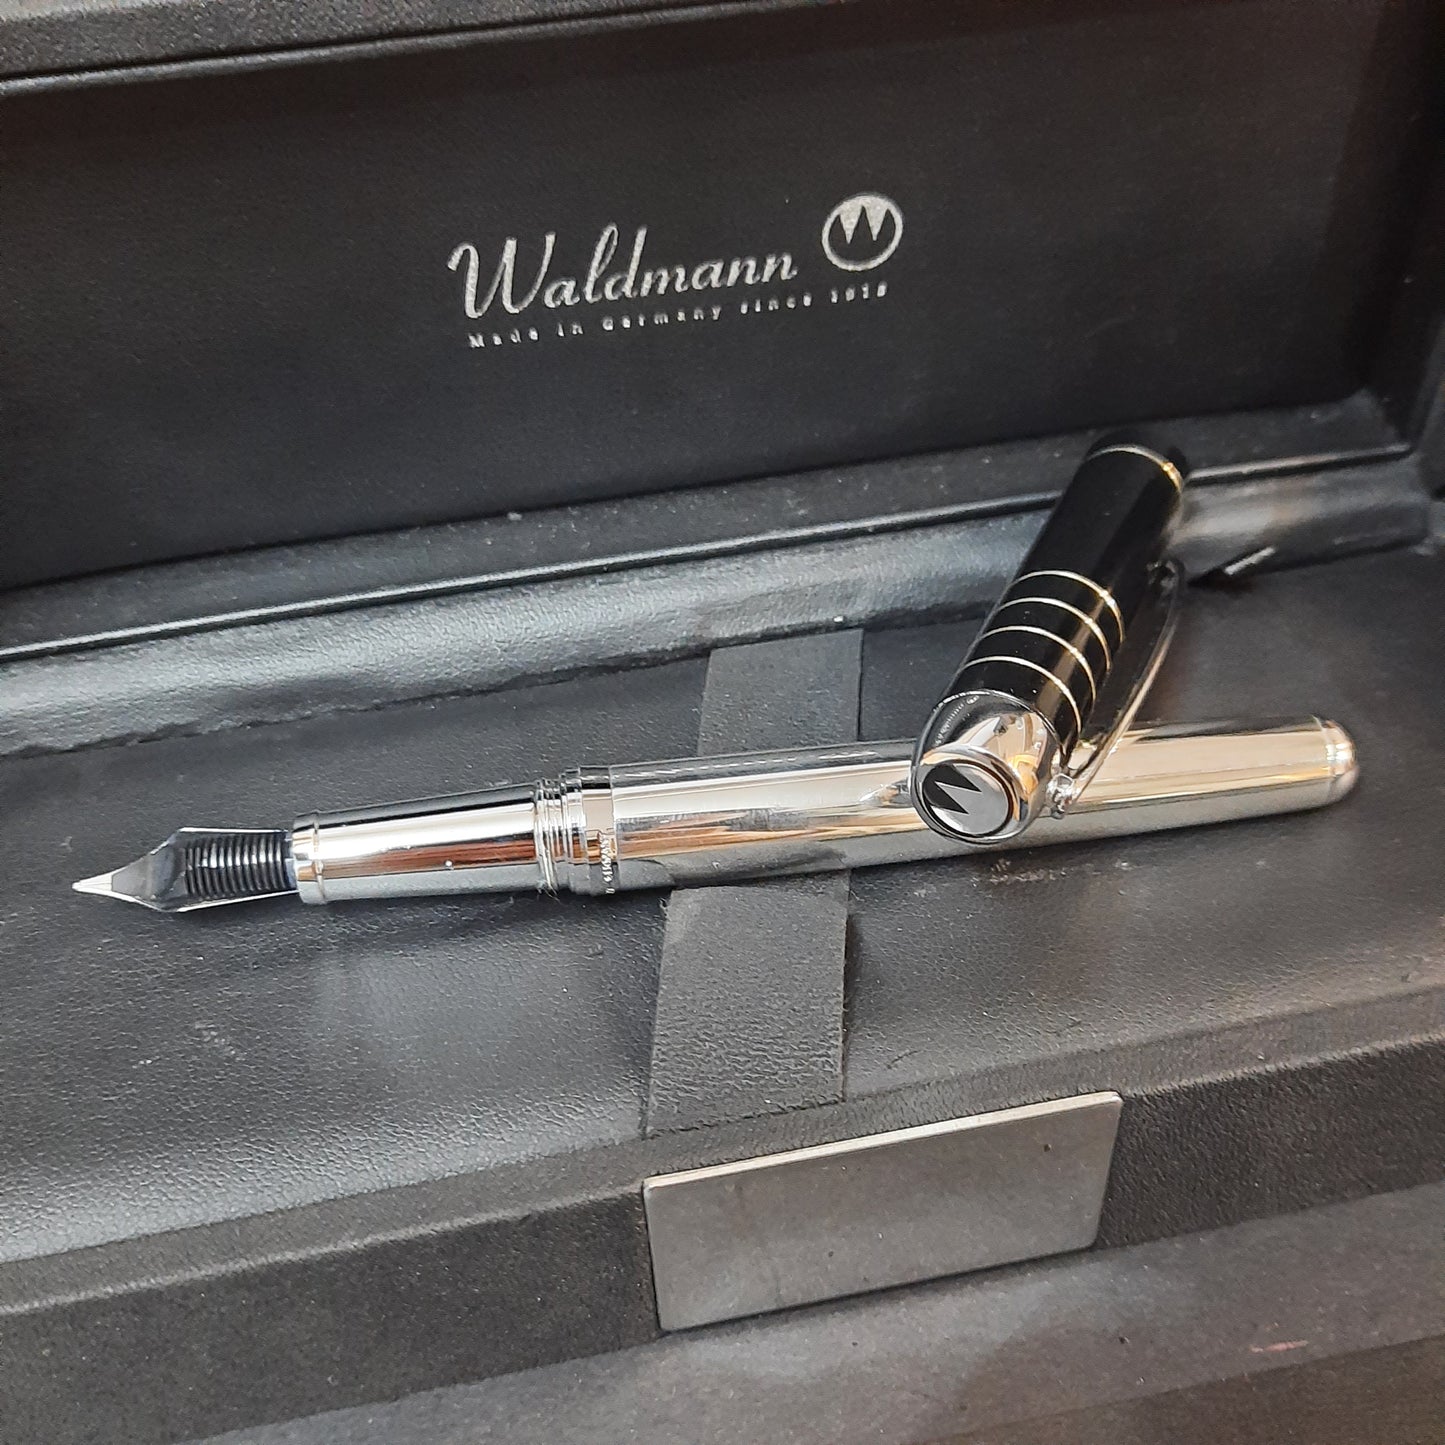 Waldmann Black Cap Sterling Silver Fountain Pen Made In Germany